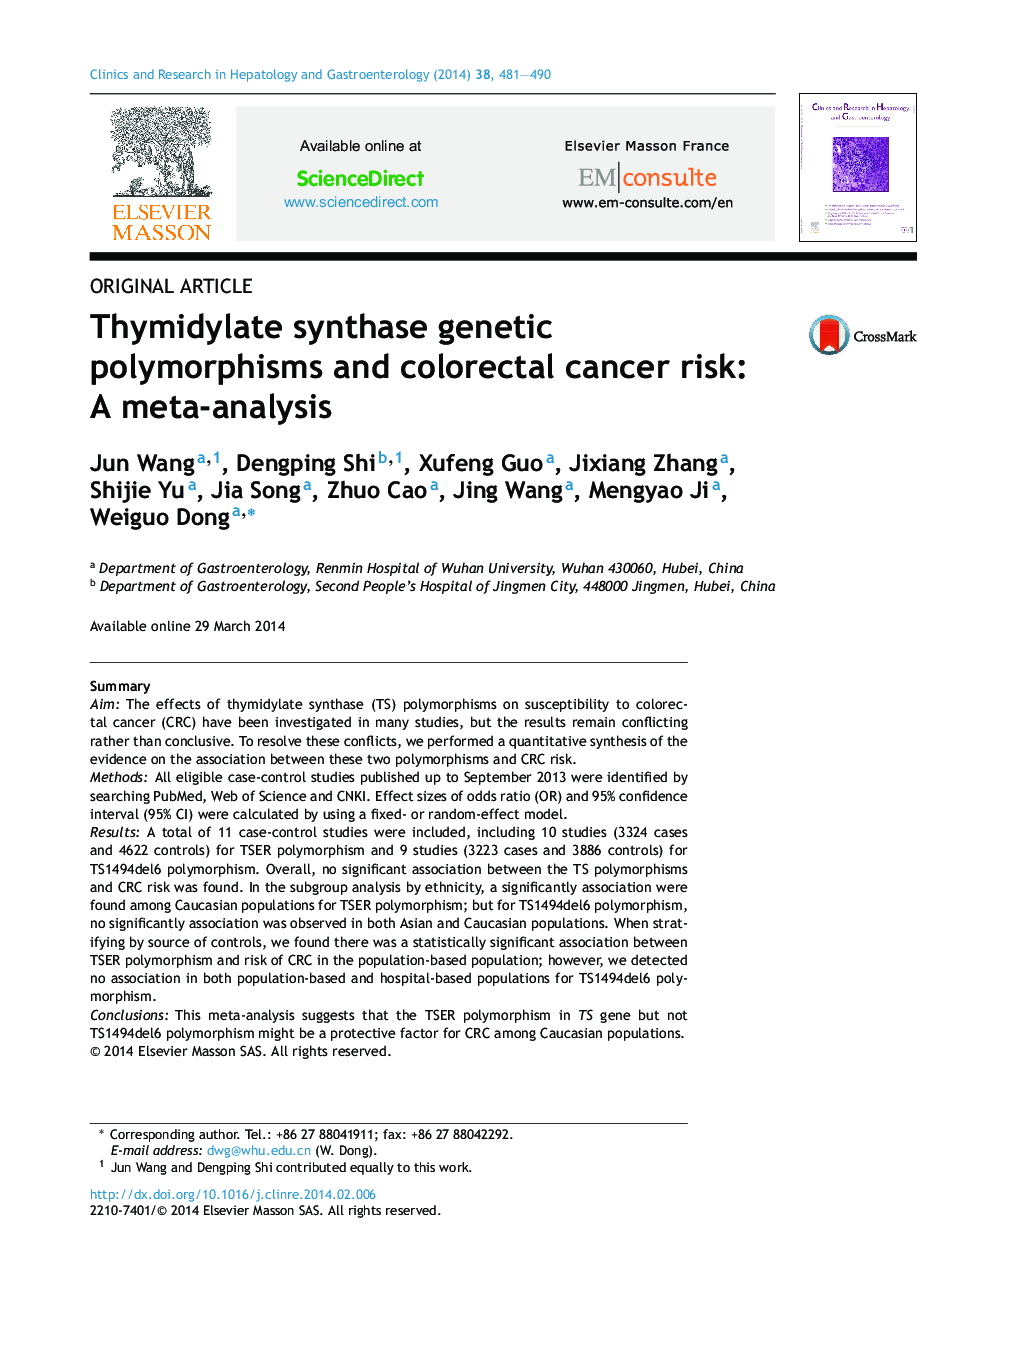 پلیمورفیسم ژنتیکی سمیاتیدیدات و خطر سرطان کولورکتال: یک متاآنالیز 